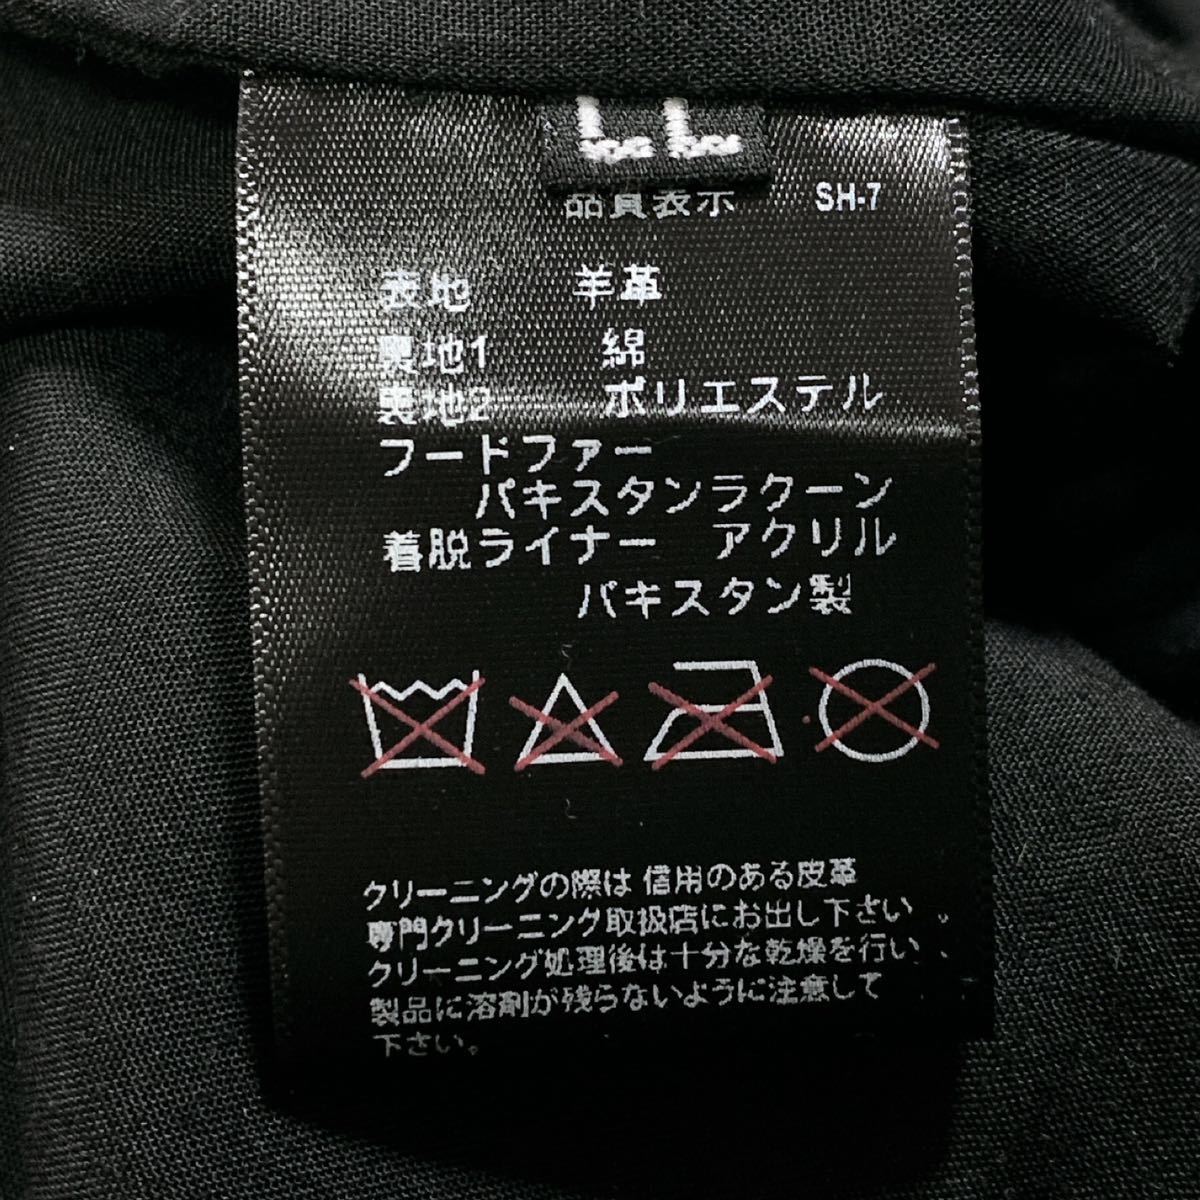 リューグーレザーズ Liugoo Leathers 羊革 ラムレザー M-51 モッズコート ライナー付き ブラック 黒 LL XL_画像9